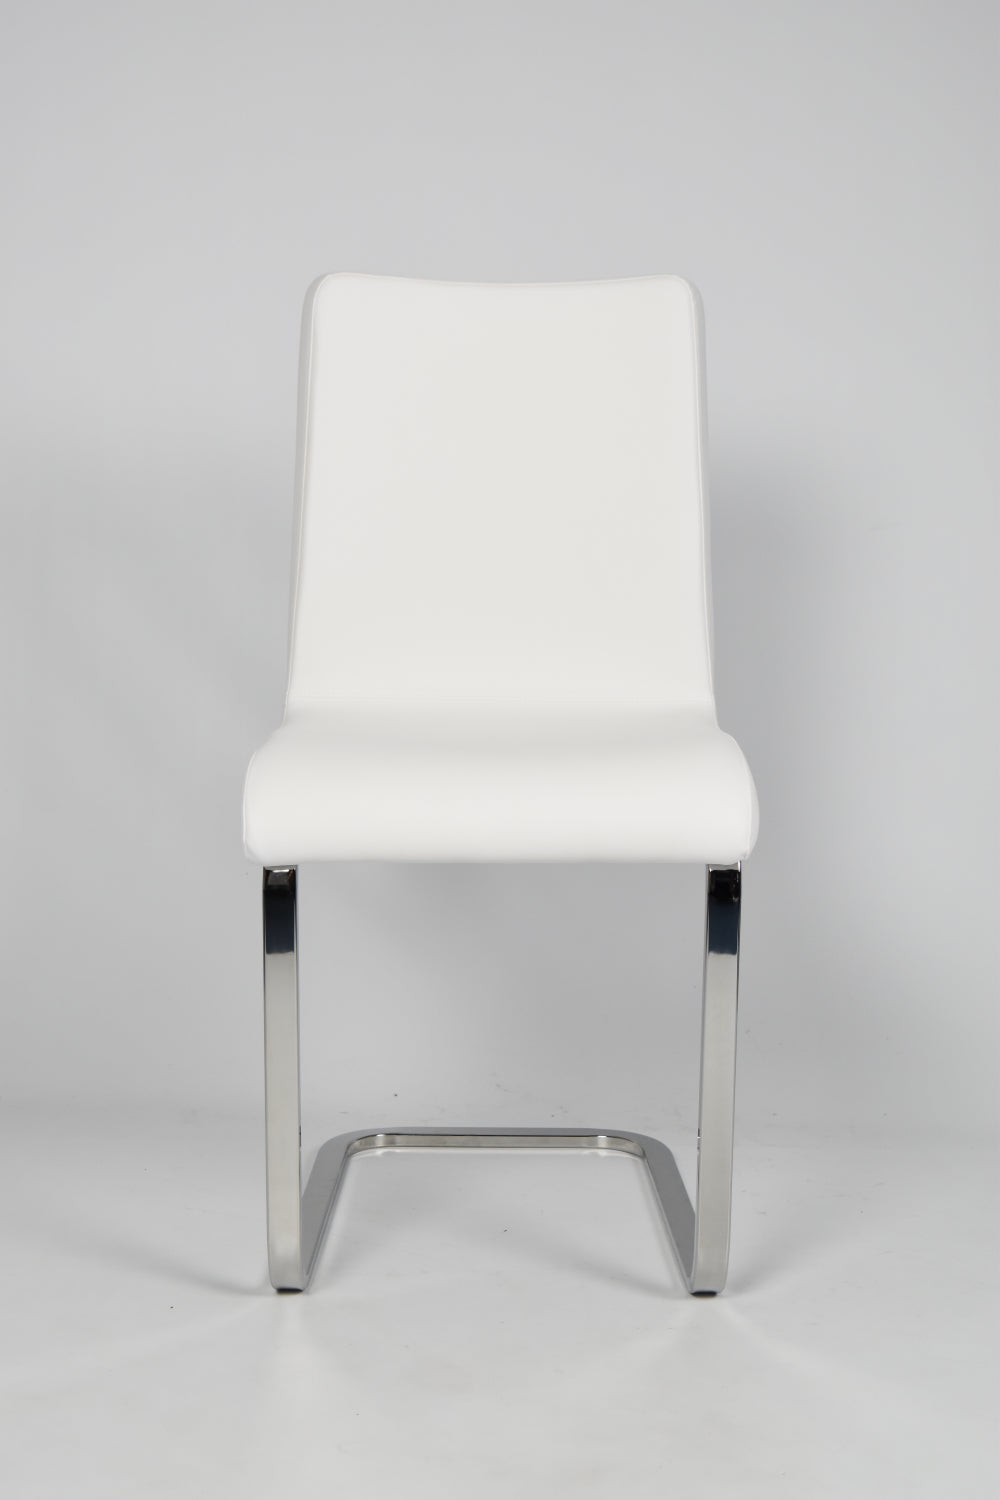 Tommychairs - Set 4 sillas Greta Cantilever con Patas de Acero Cromado de Alta Resistencia y Asiento en Madera Multicapa, tapizado en Polipiel Blanca